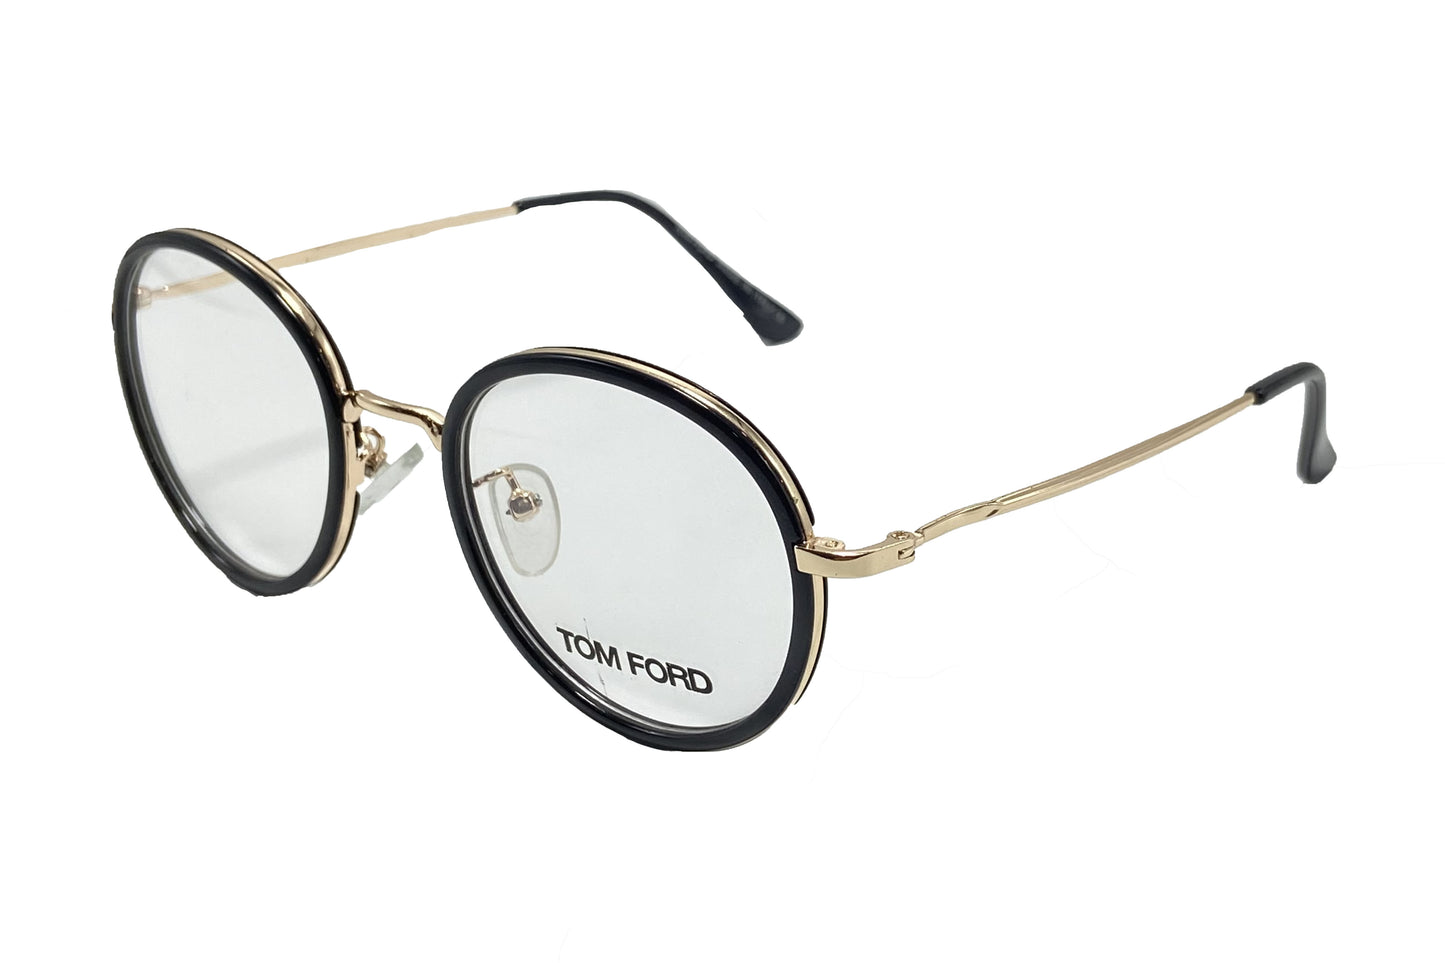 NS Classic - 2625 - Black G - Eyeglasses